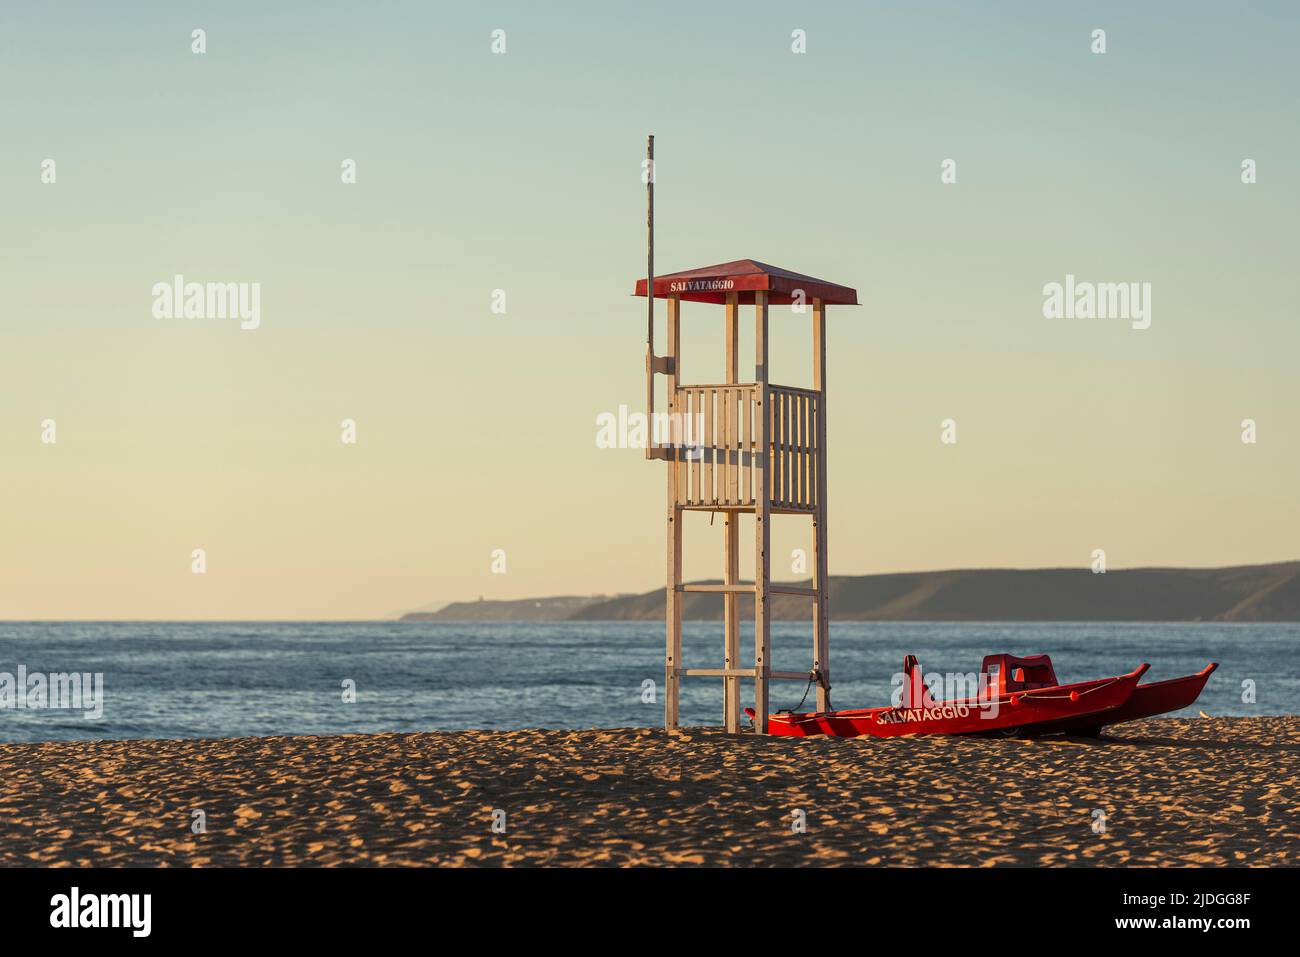 Tour de guet et bateau de sauvetage Salvataggio sur la plage de sable des dunes de Piscinas dans la lumière dorée au coucher du soleil, Costa Verde, Sardaigne, Italie Banque D'Images